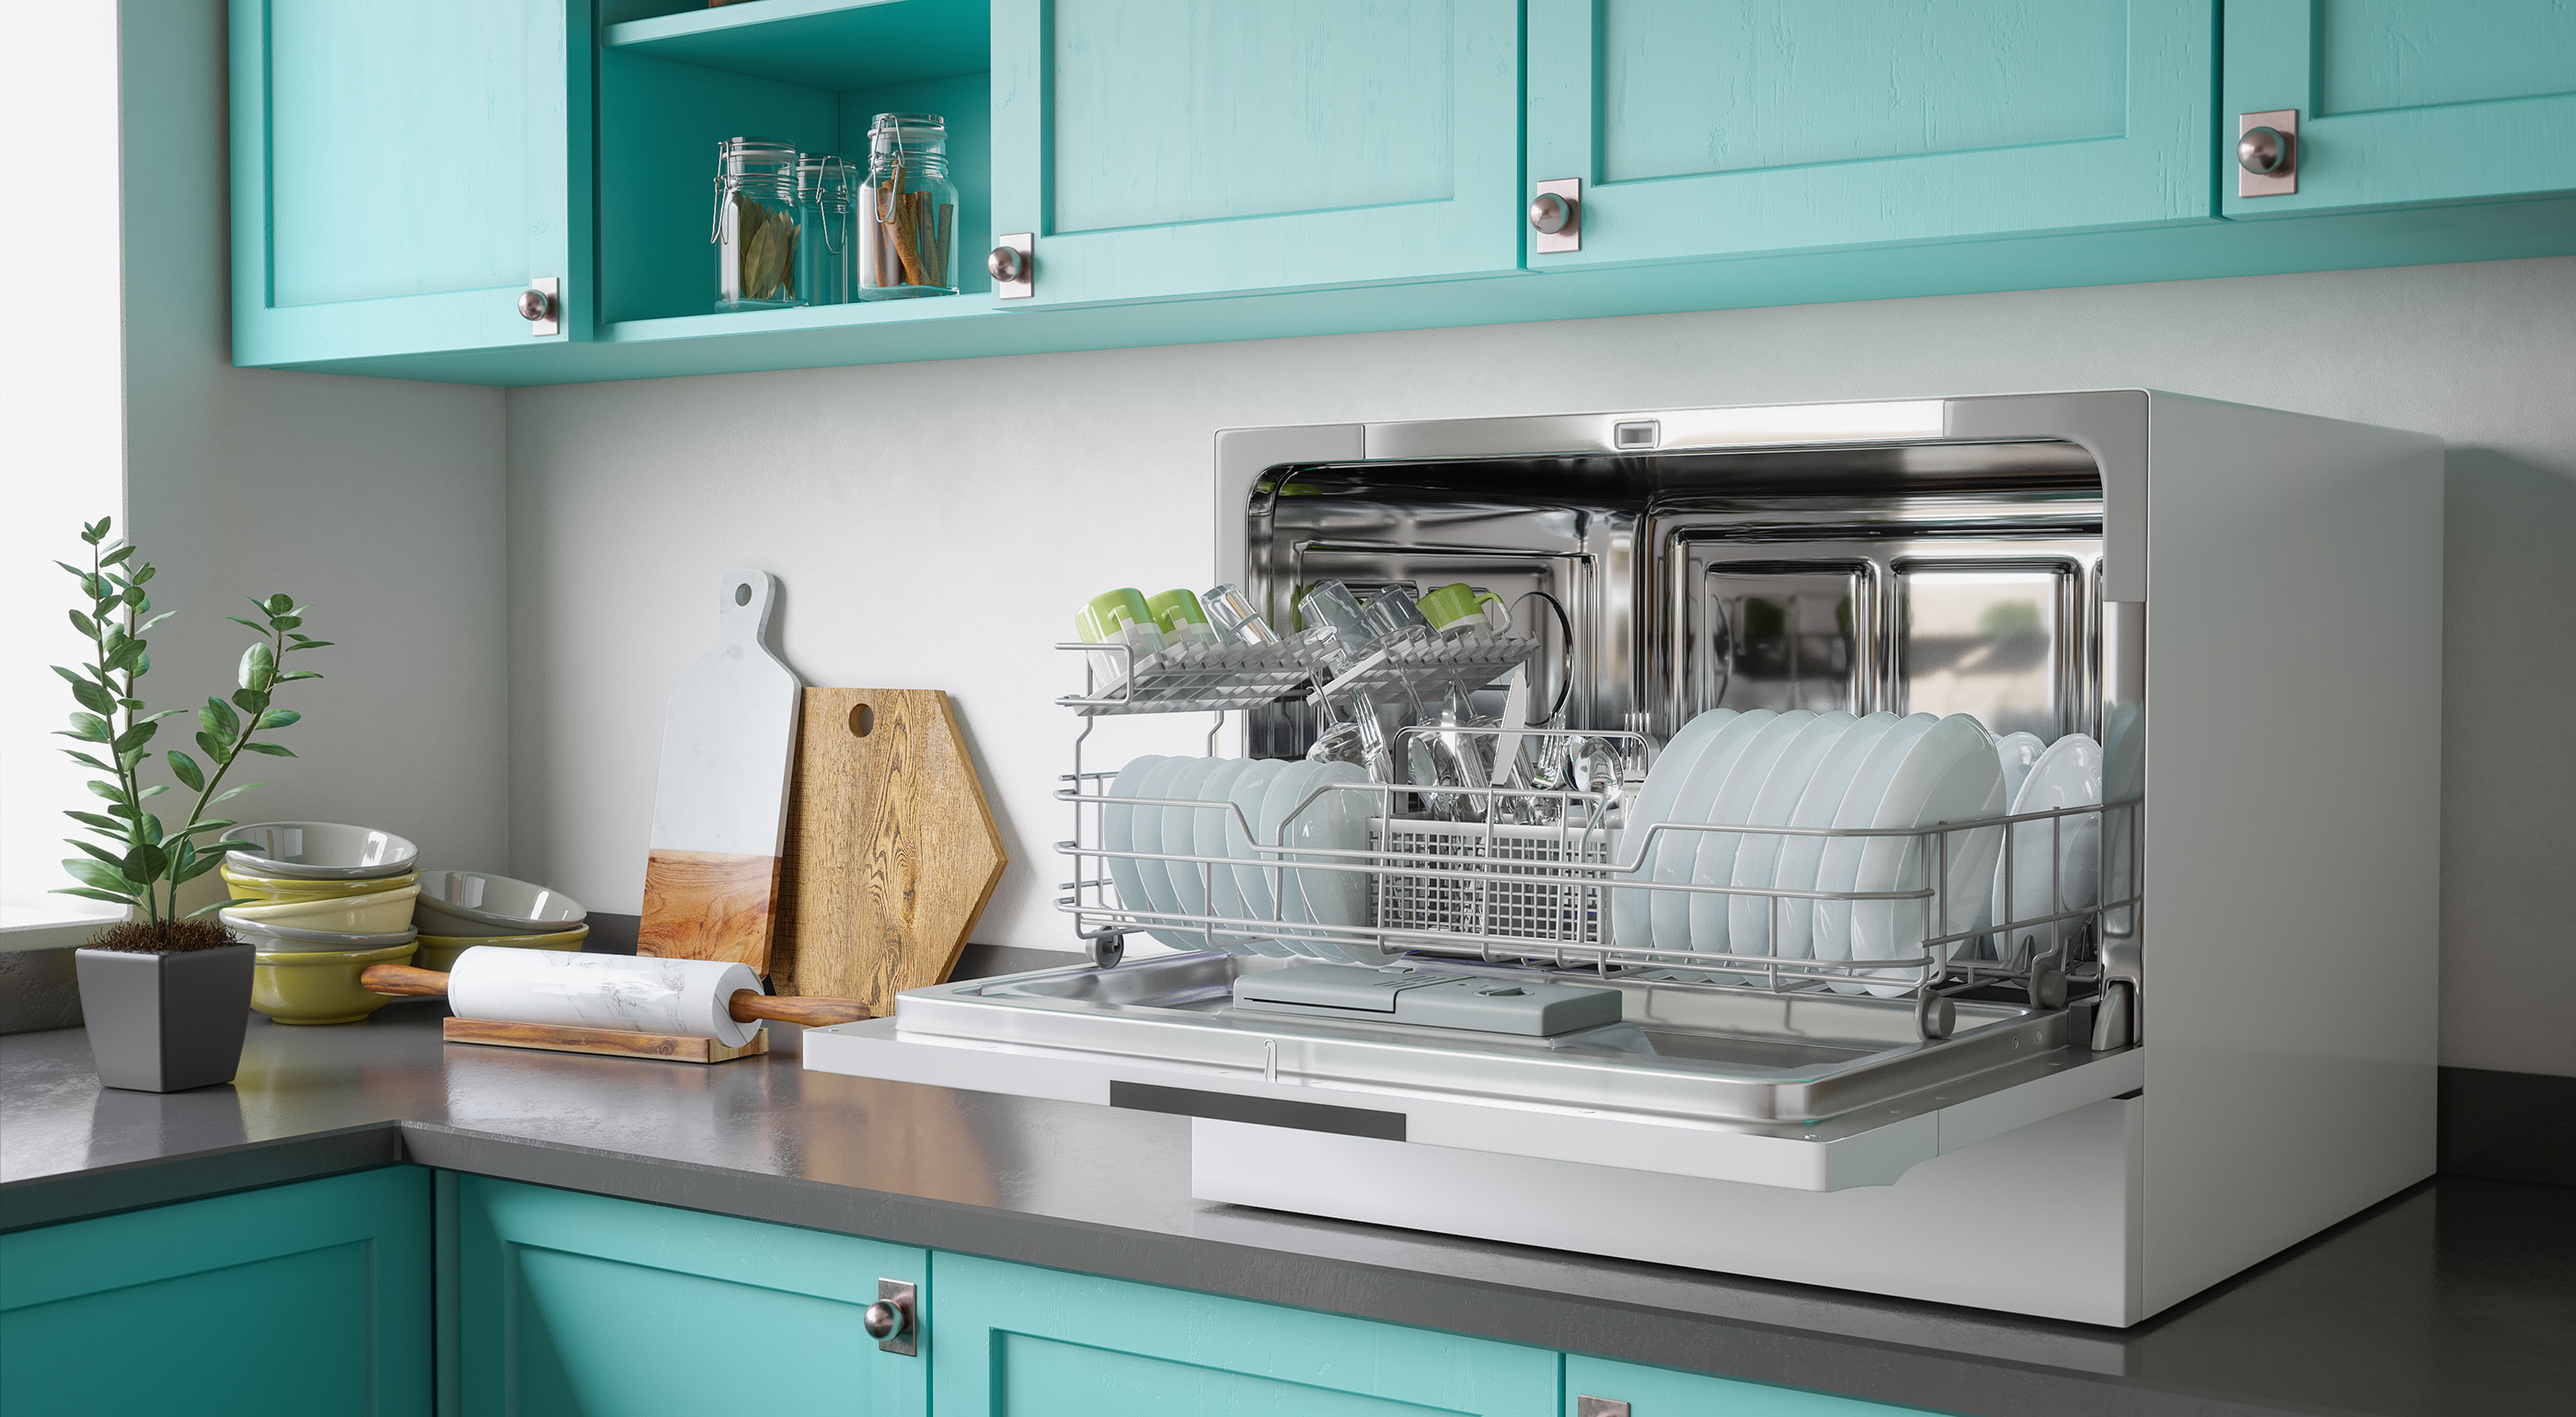 Настольные маленькие посудомоечные машины: ТОП-10 рейтинг и обзор лучших маленьких моделей 2021 года, а также отзывы о них и характеристики